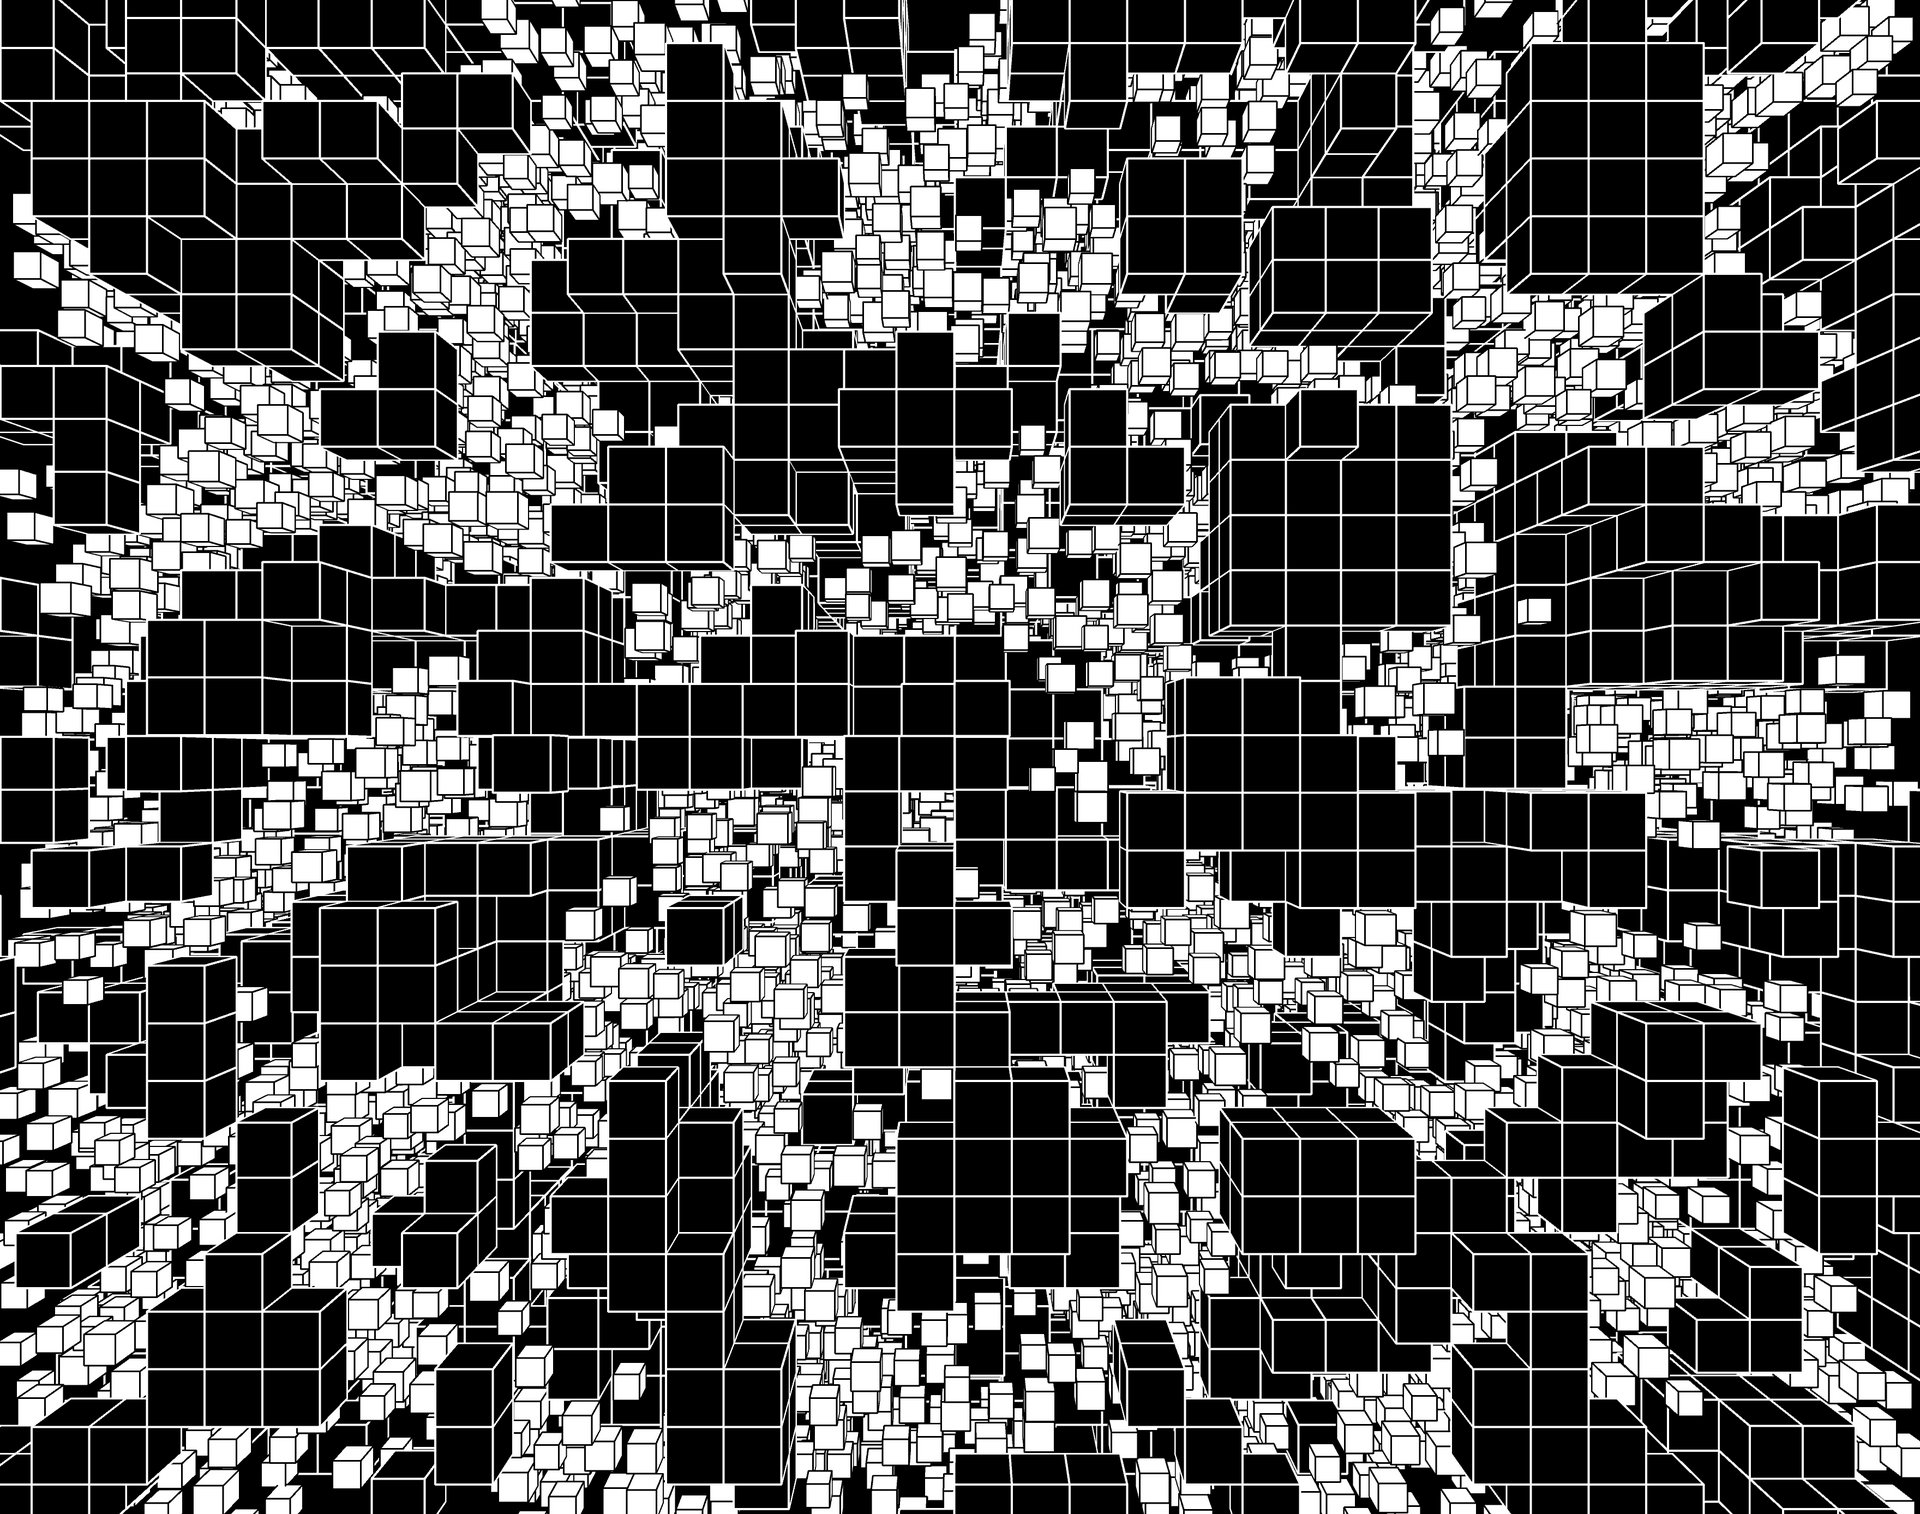 Mønster af kvadrater i sort og hvid. Særligt de hvide kvadrater skaber forskellige mønstre og de sorte kvadrater står som en baggrund.